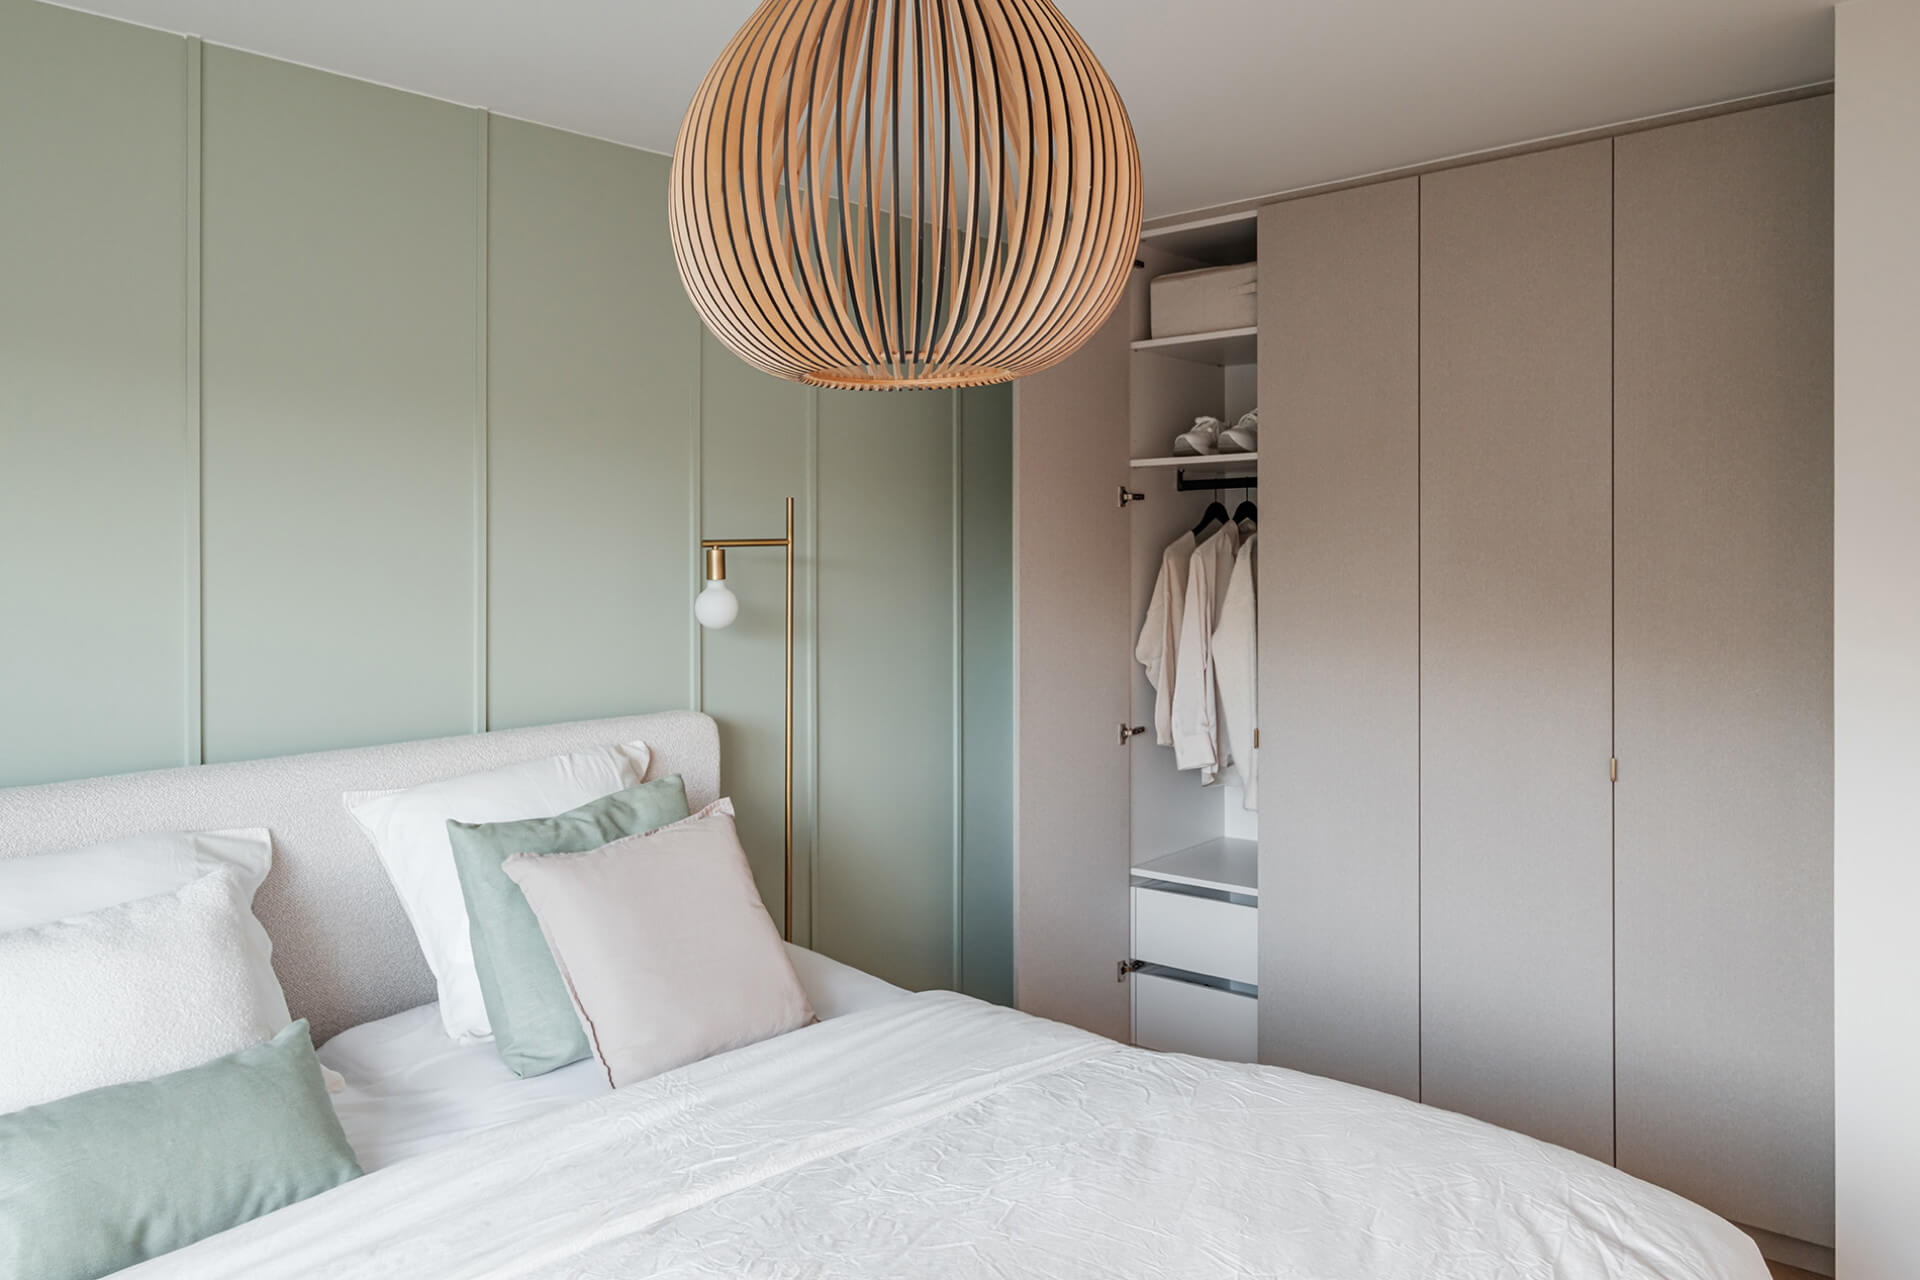 Slaapkamer met ingebouwde dressing in natuurlijke kleuren